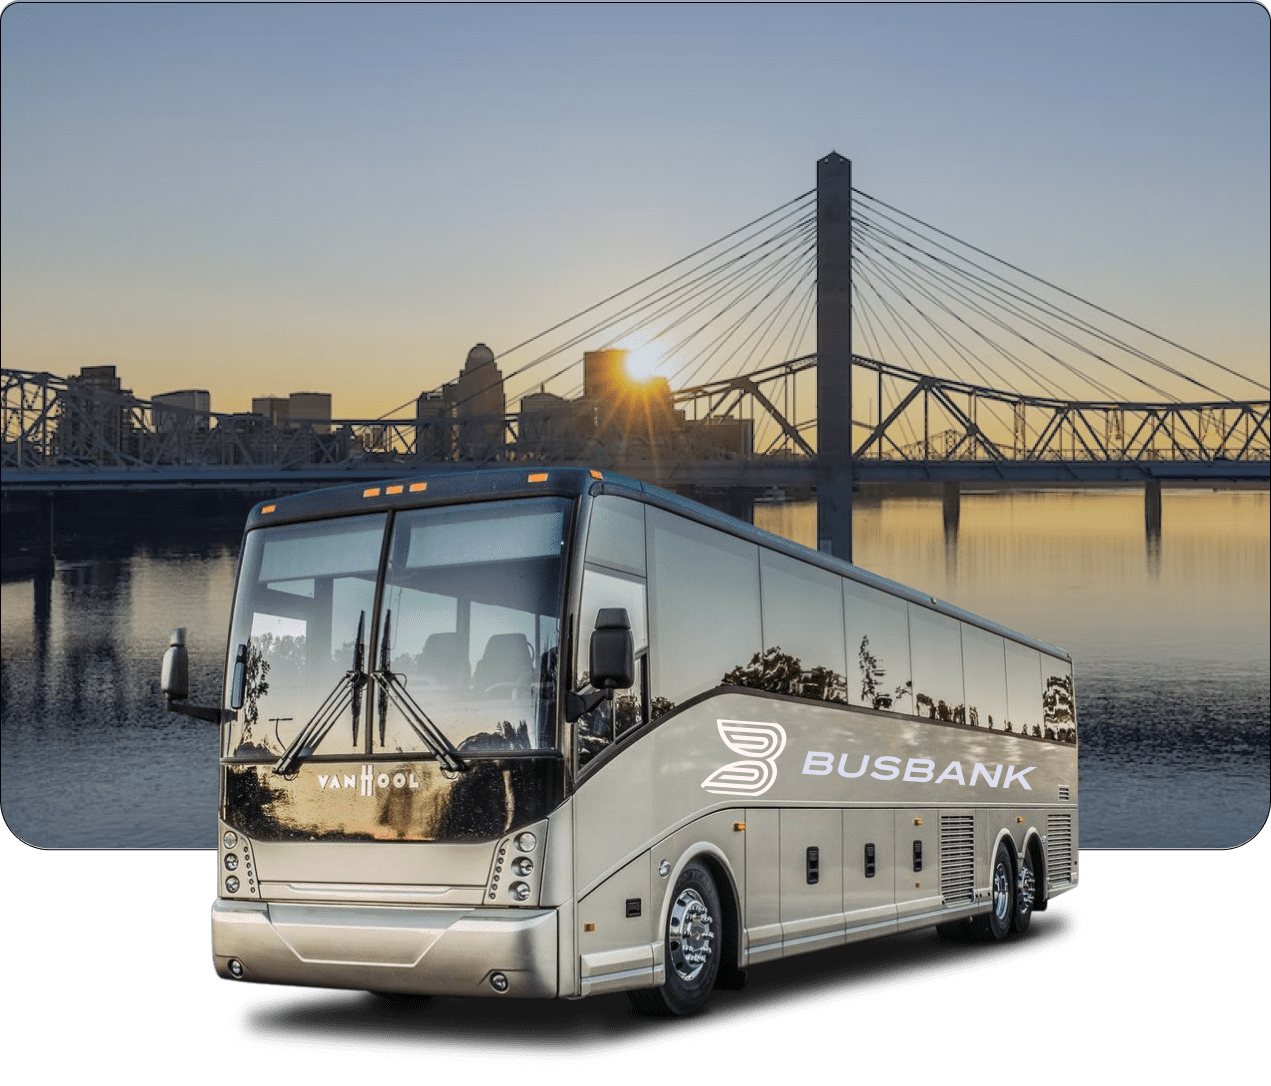 louisville bus tour companies